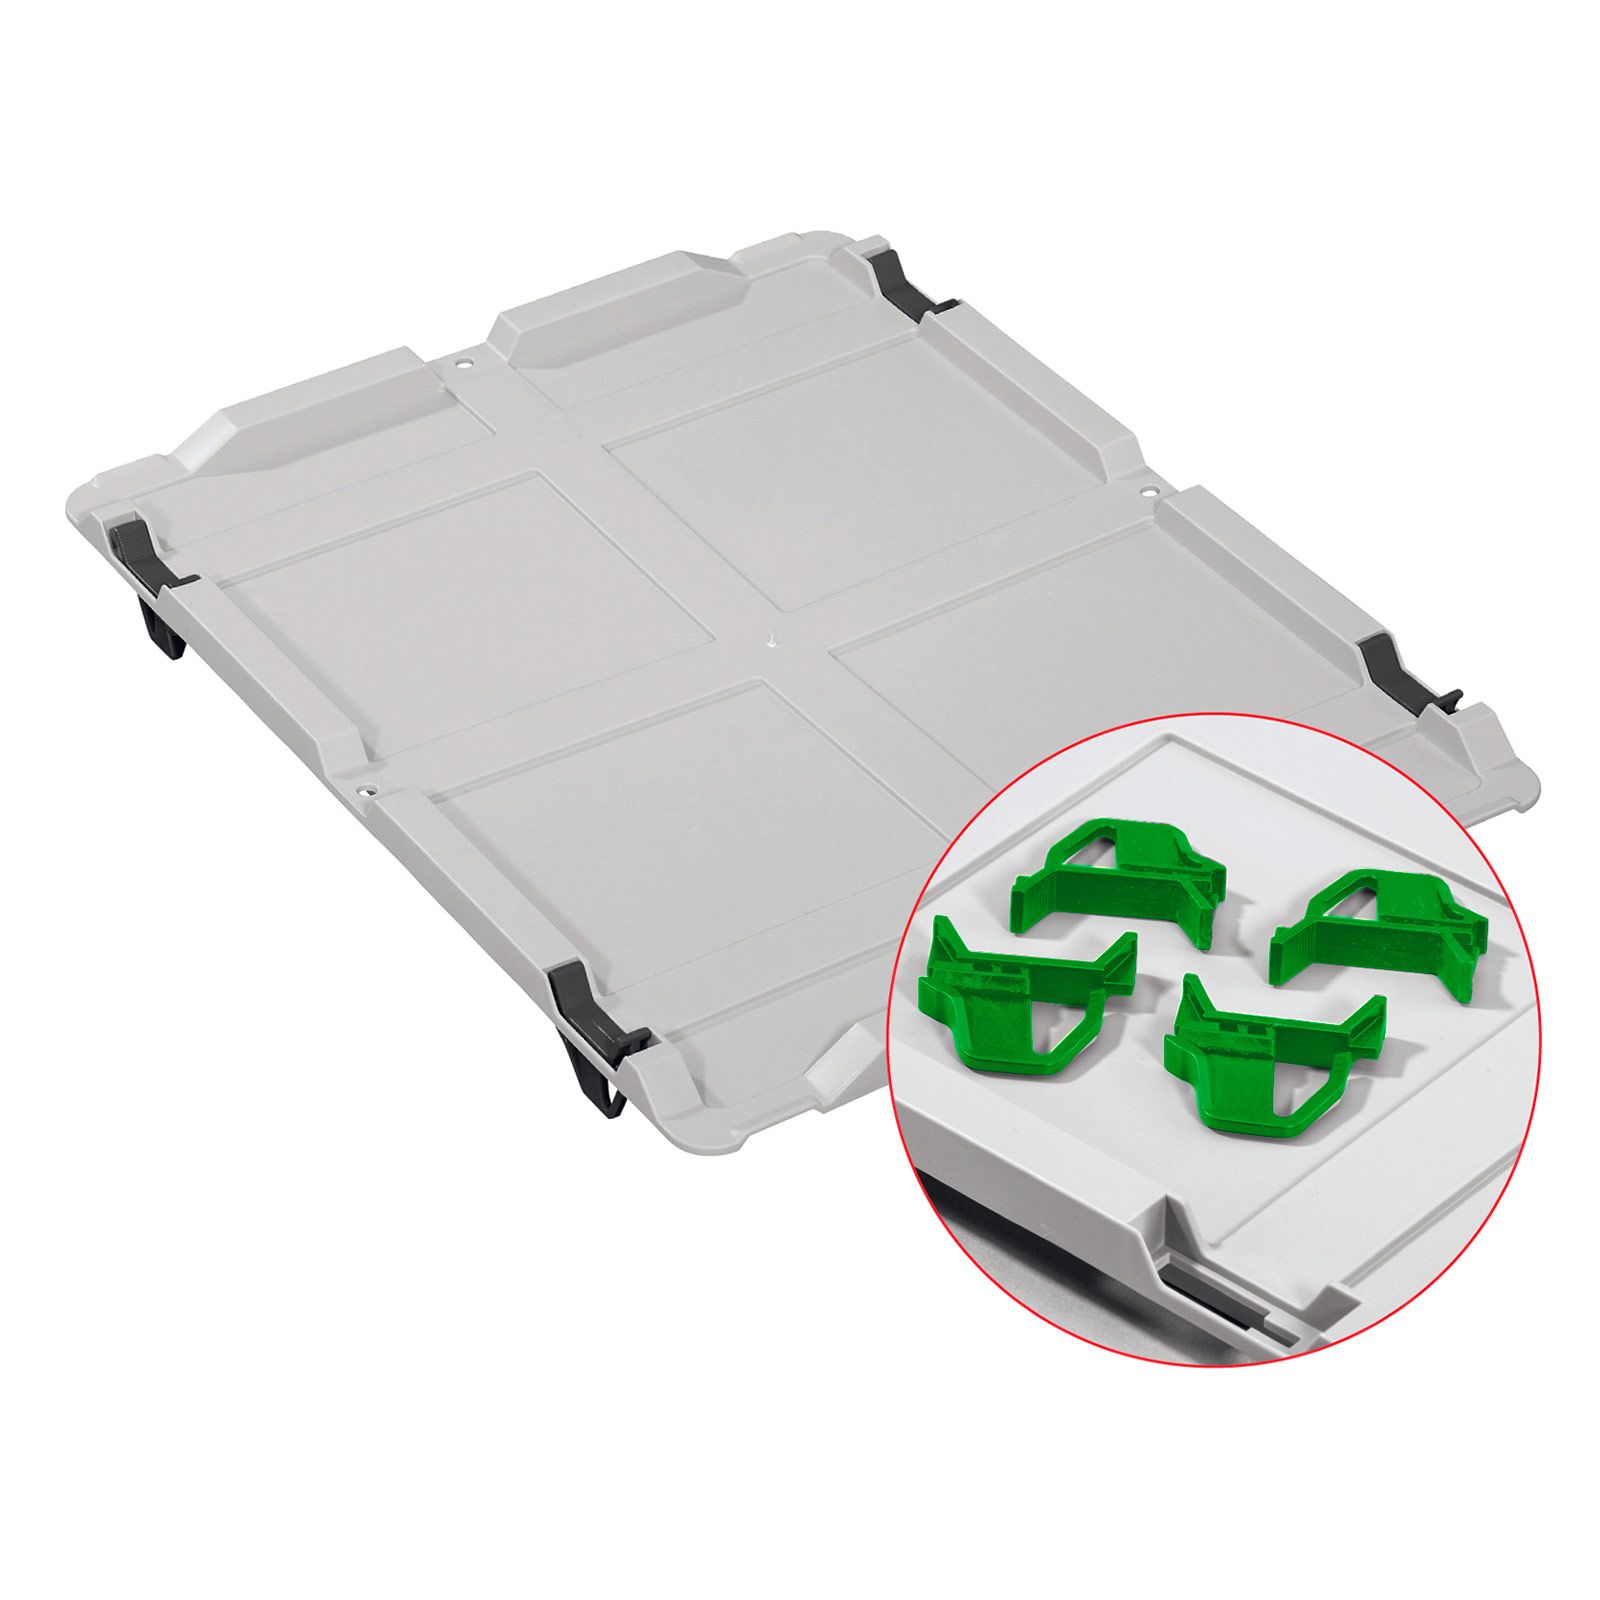 Auflagedeckel Set Eurobox NextGen mit 4 grünen Schiebeschnappverschlüssen | BxT 30x40cm | Eurobehälter, Transportbox, Transportbehälter, Stapelbehälter